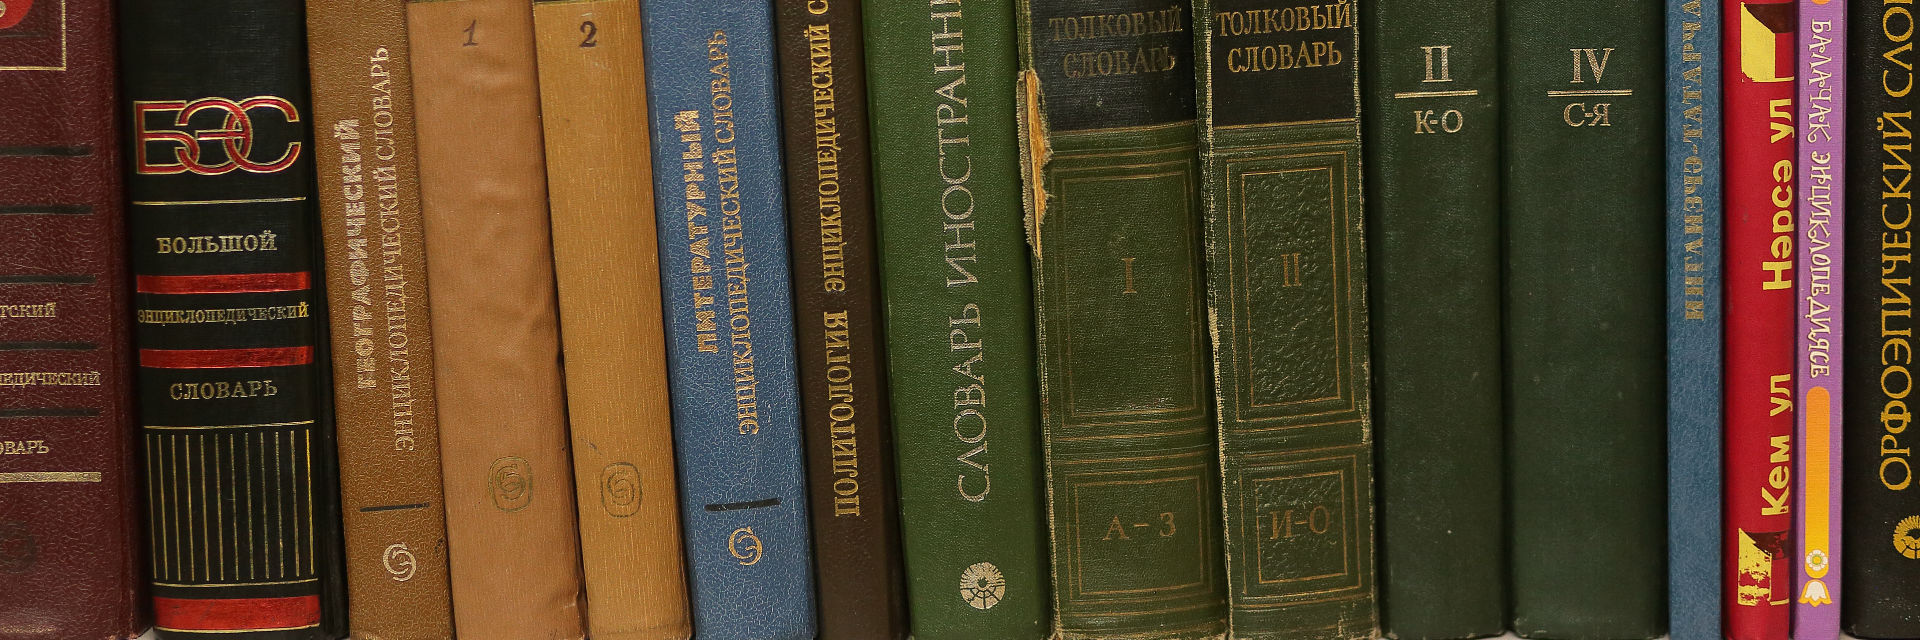 Книжная полка Татьяны Шахматовой